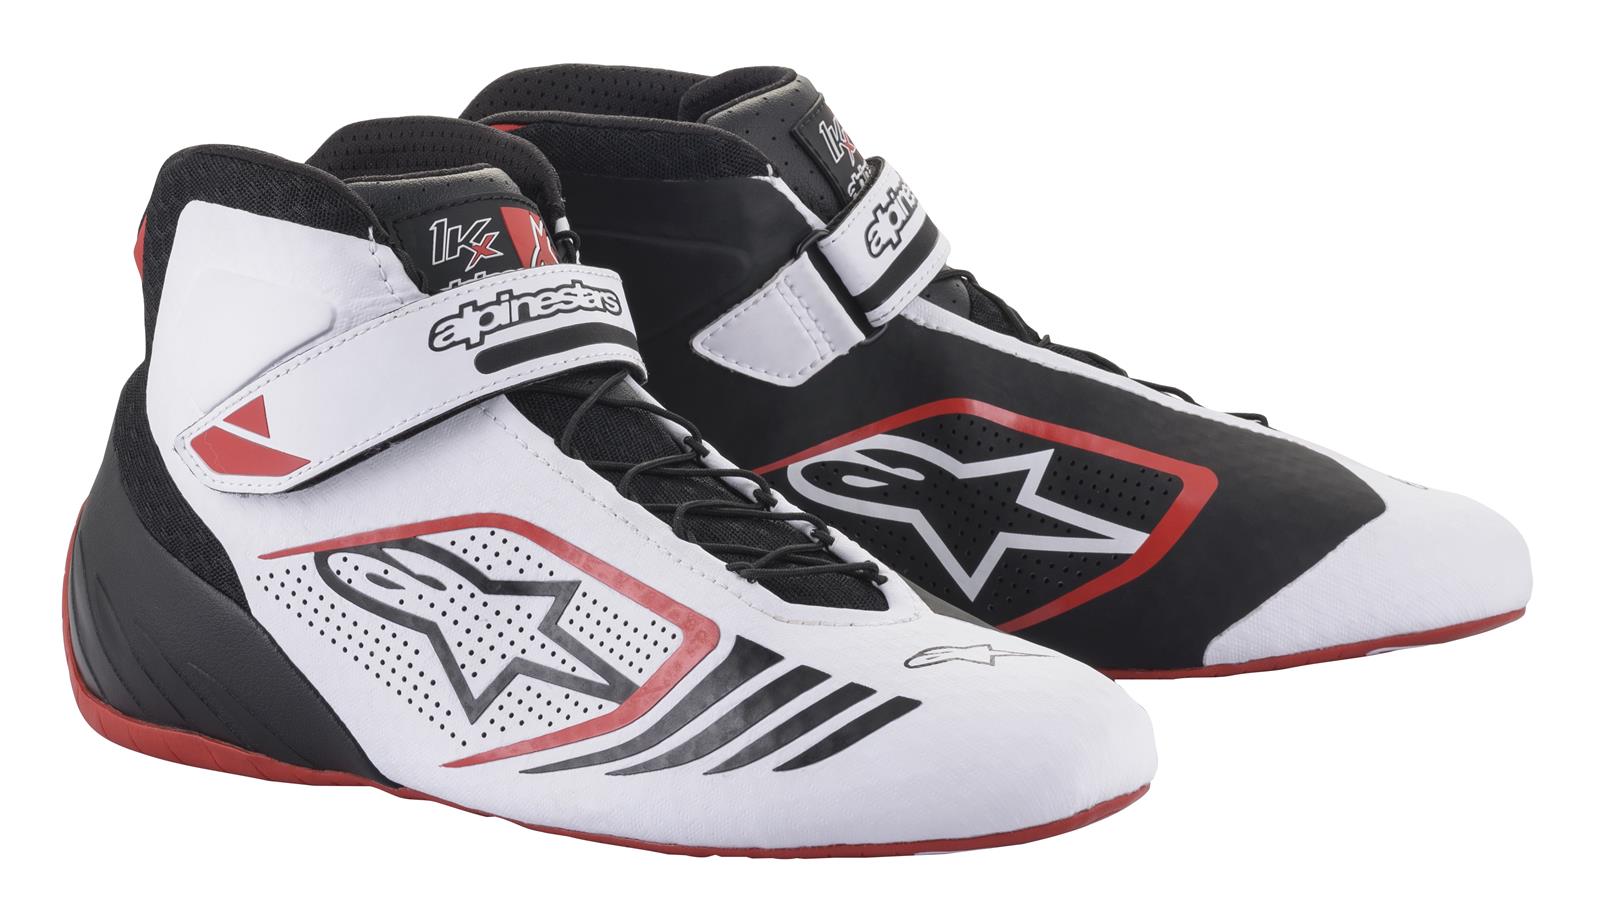 Alpinestars TECH-1 KX ботинки для картинга, черный/белый/красный, р-р 39(EUR)/7(US)/6(UK). DARK-STOCK.RU